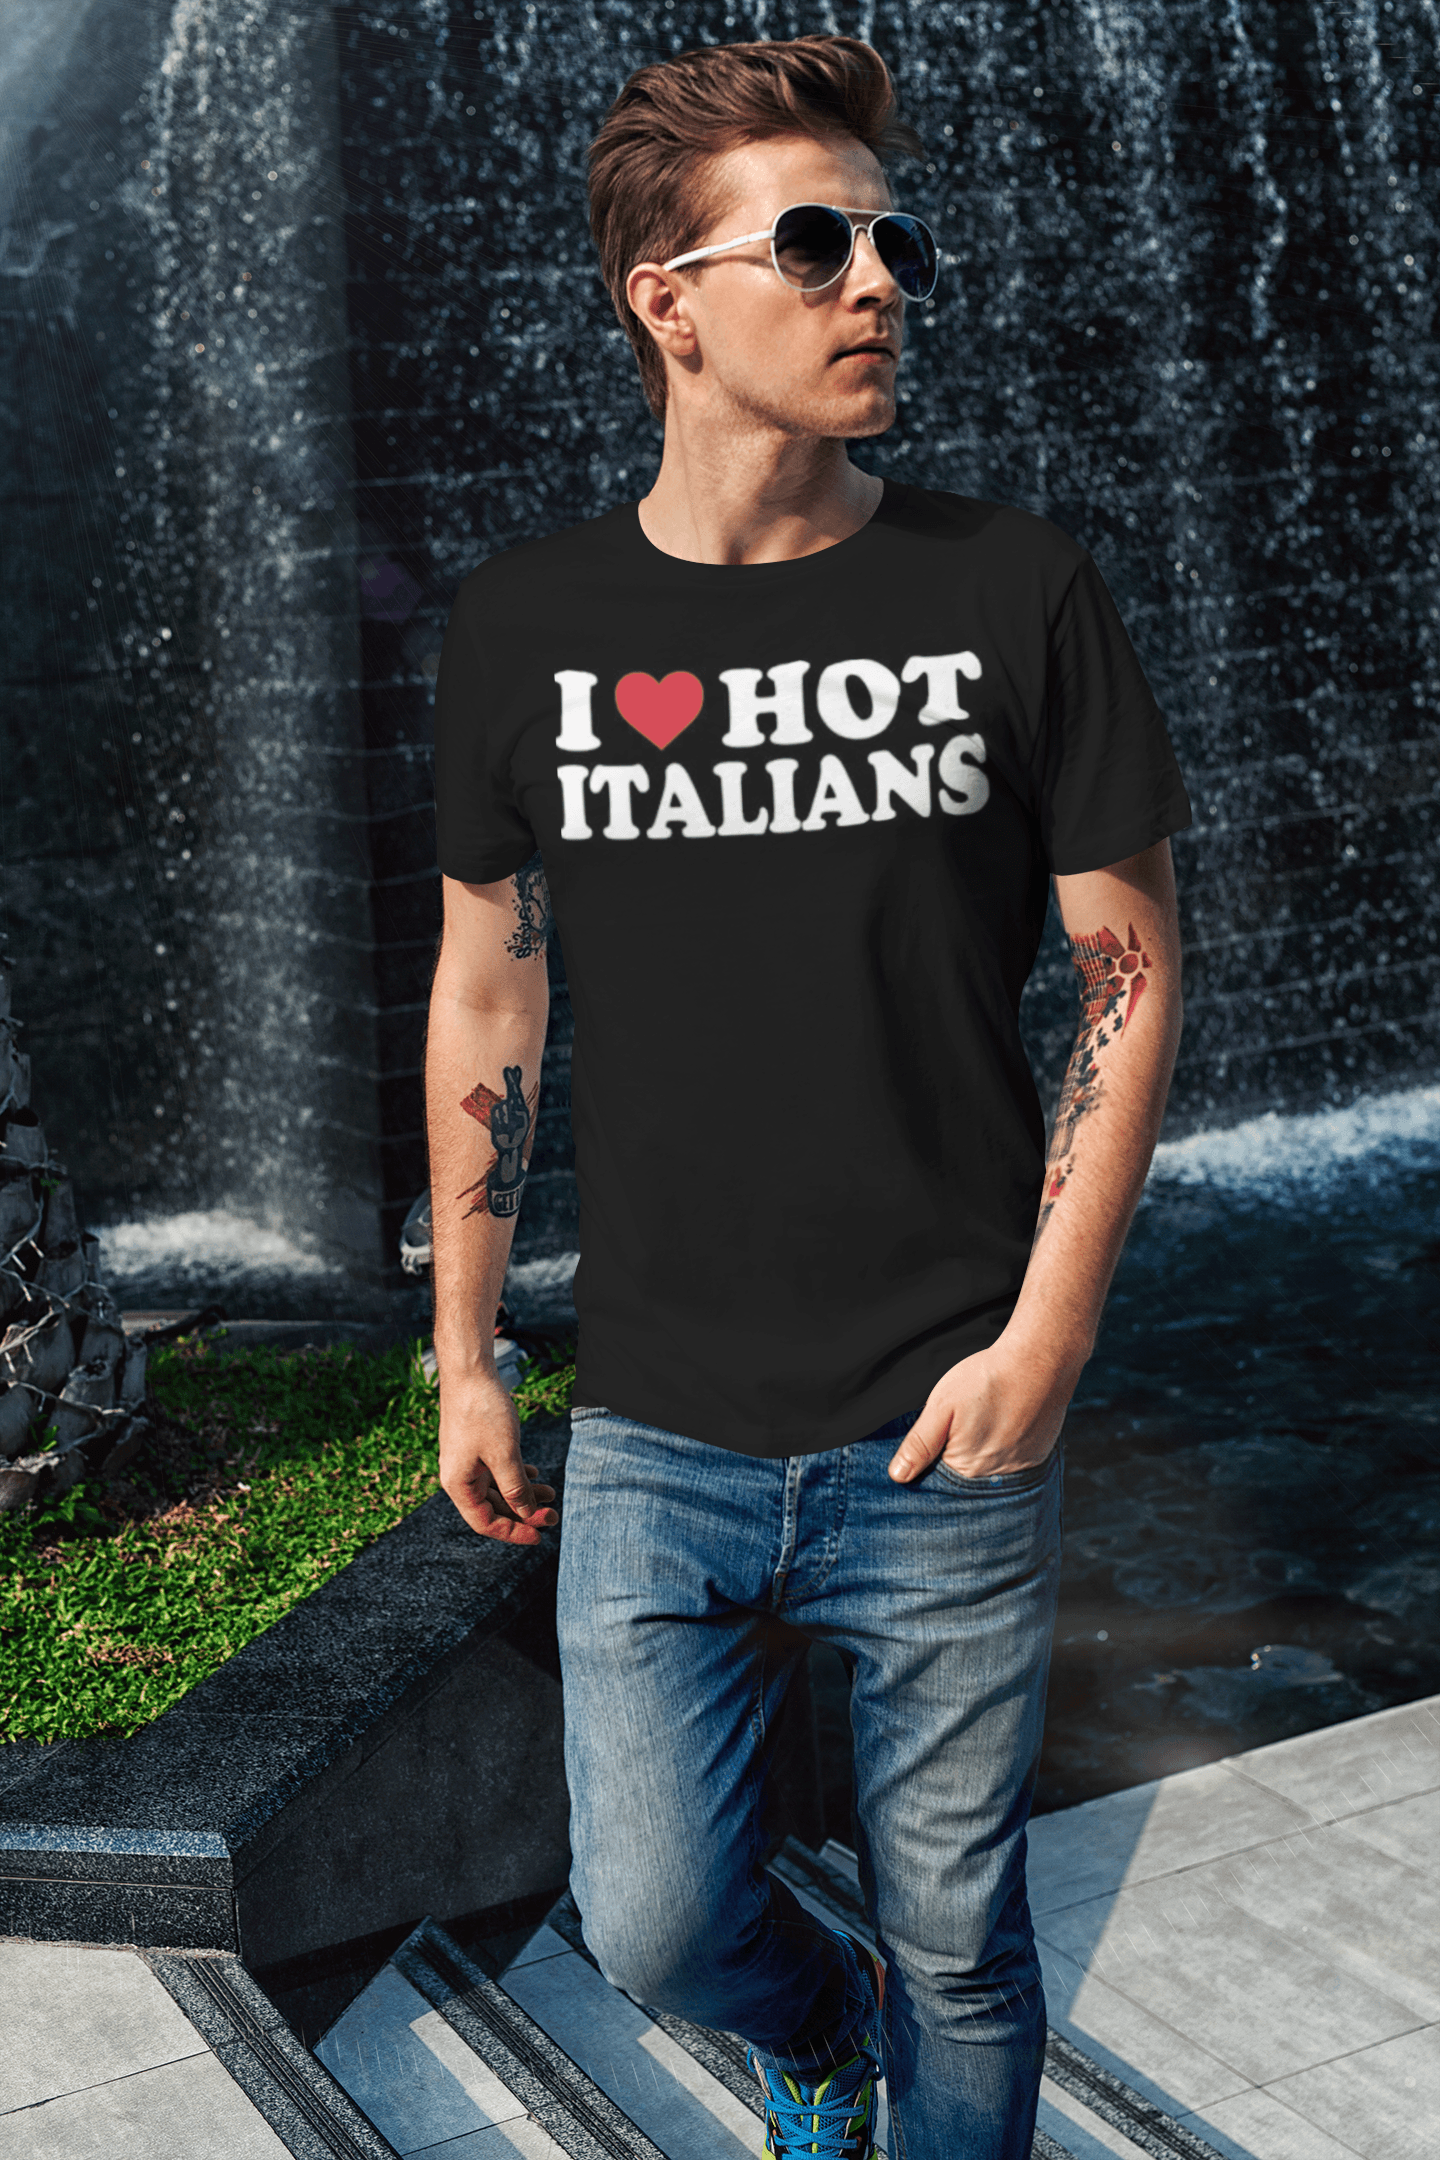 I Love Hot Italians Top Koala Short Sleeve Sofstyle Unisex Tee - TopKoalaTee